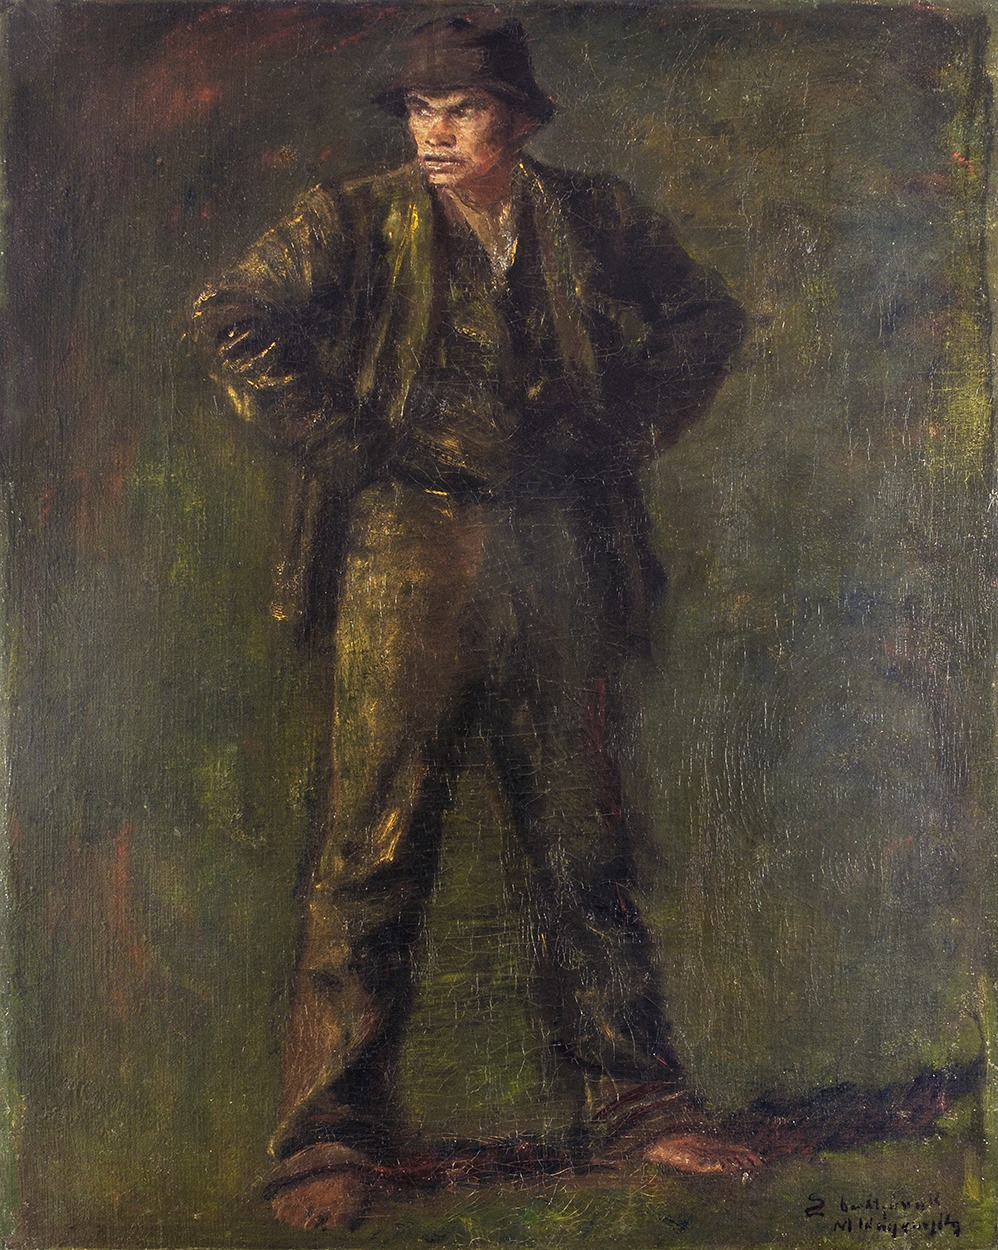 Mednyánszky László (1852-1919) Outcast, around 1897